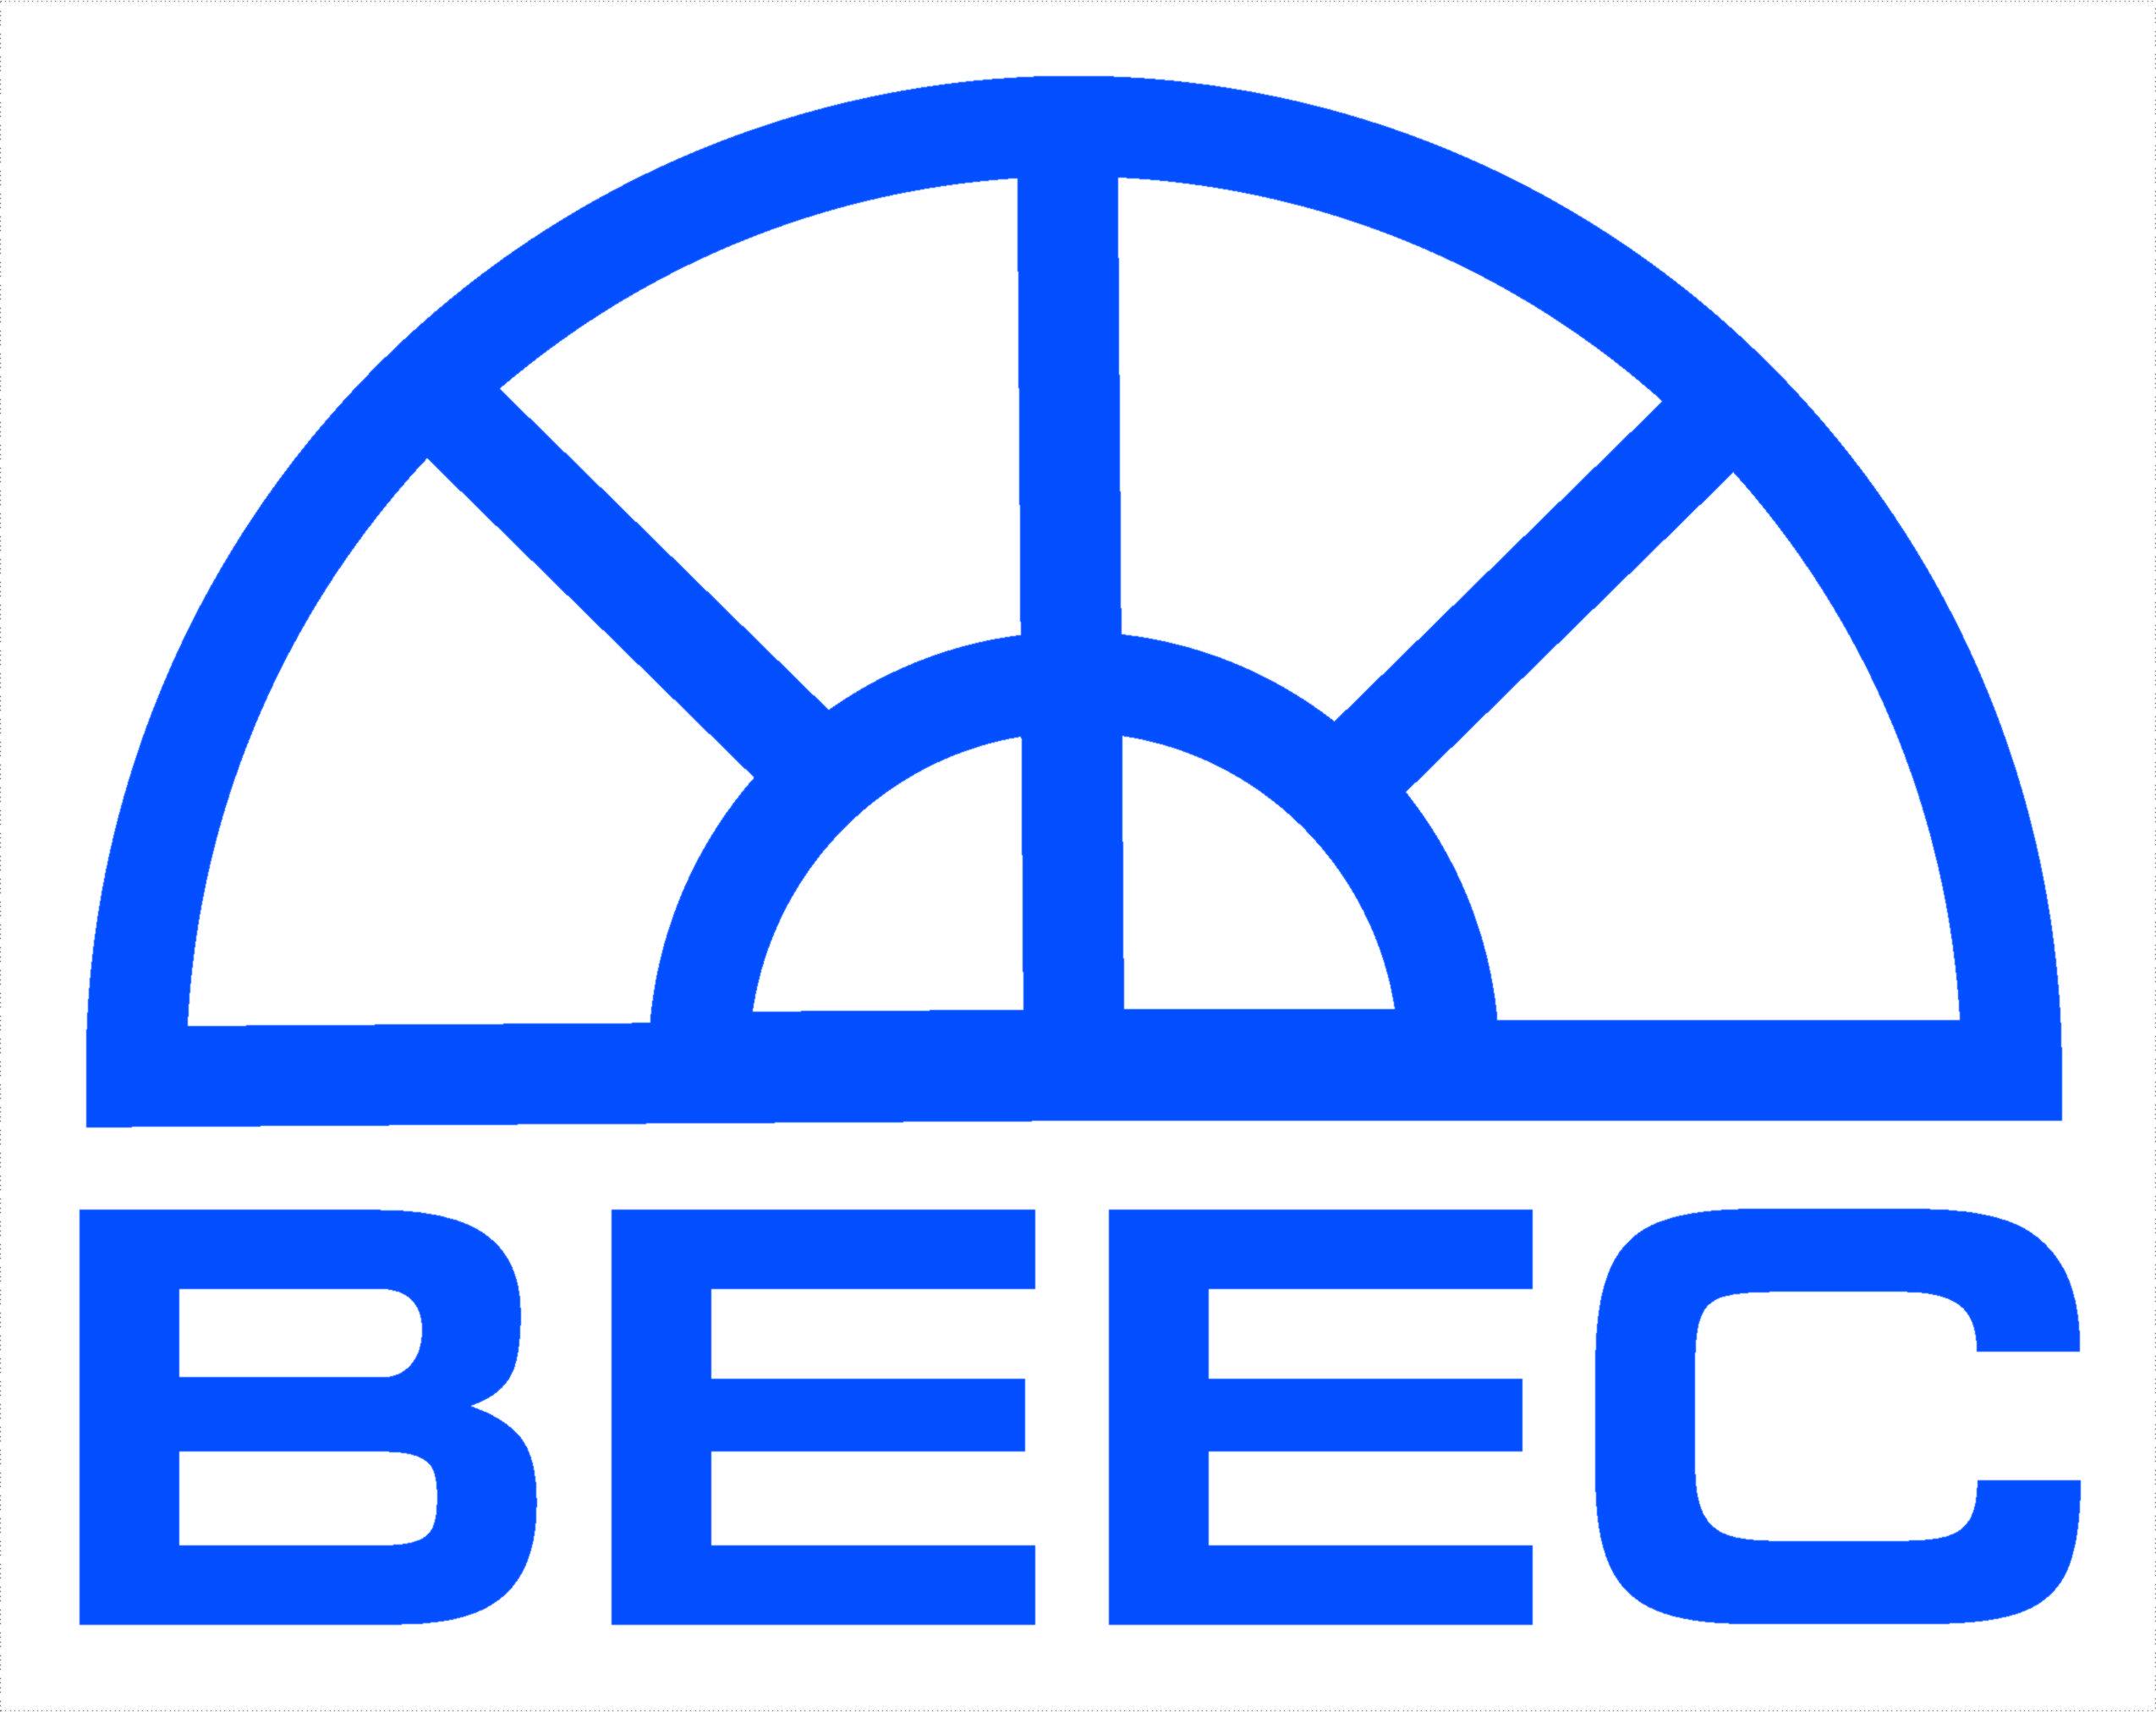 Building Energy Efficiency Center (BEEC)